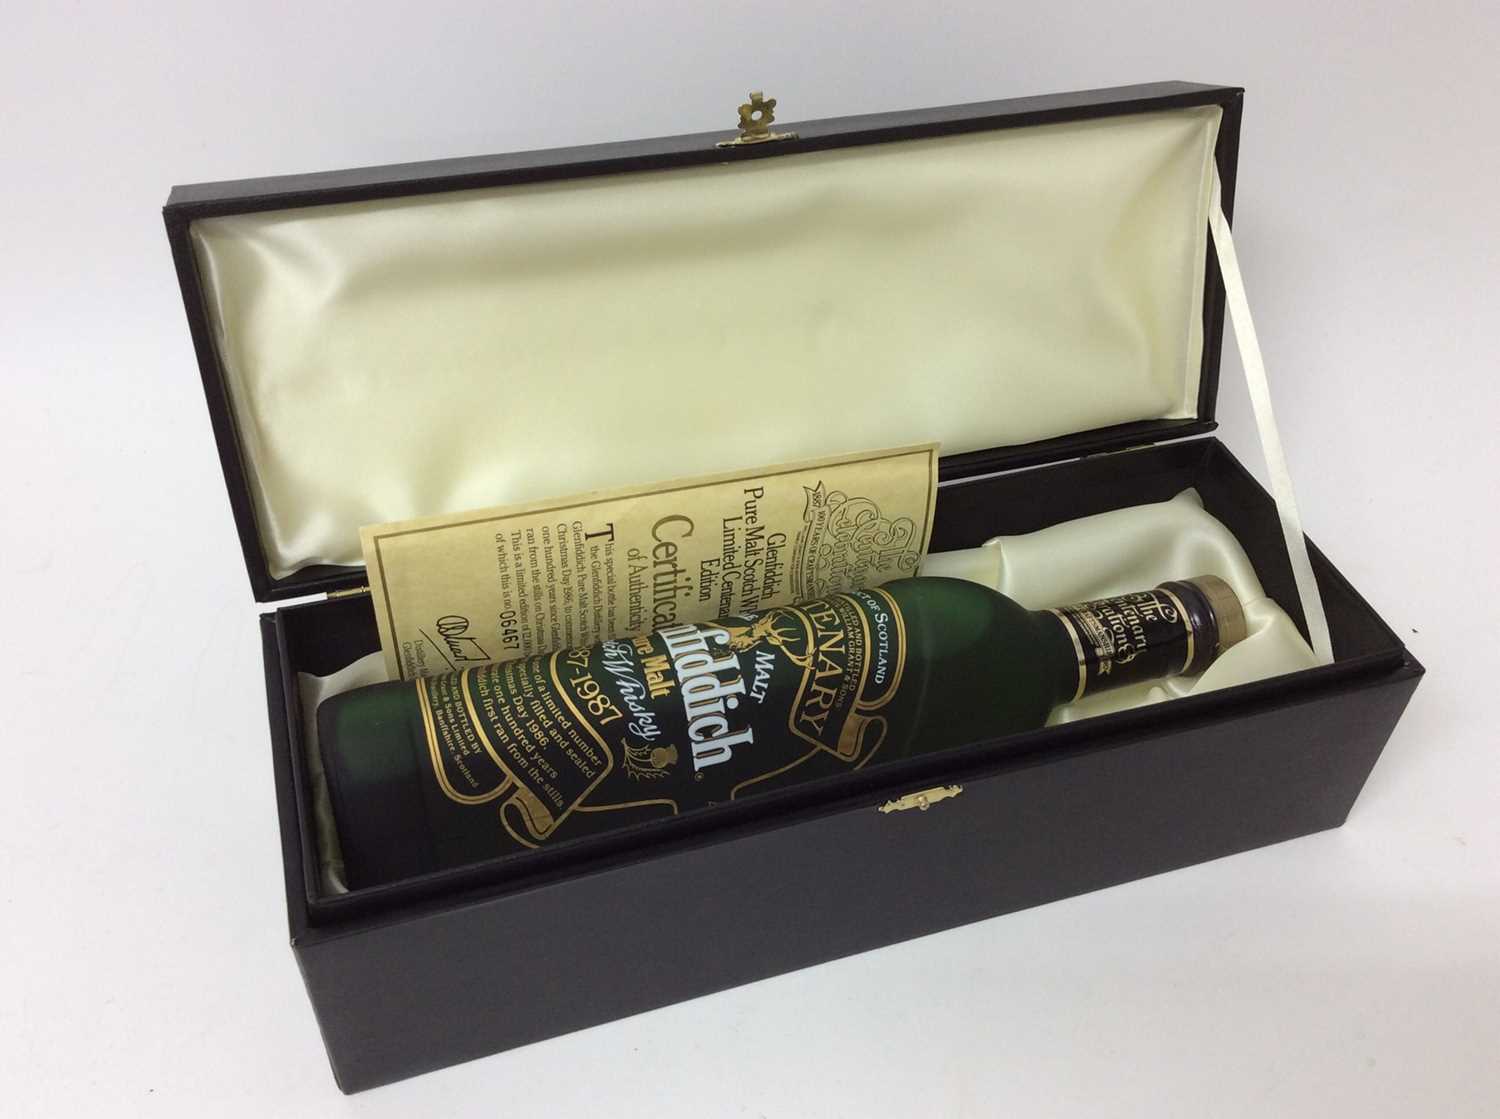 Glenfiddich 100 year celebration whisky - Image 5 of 5